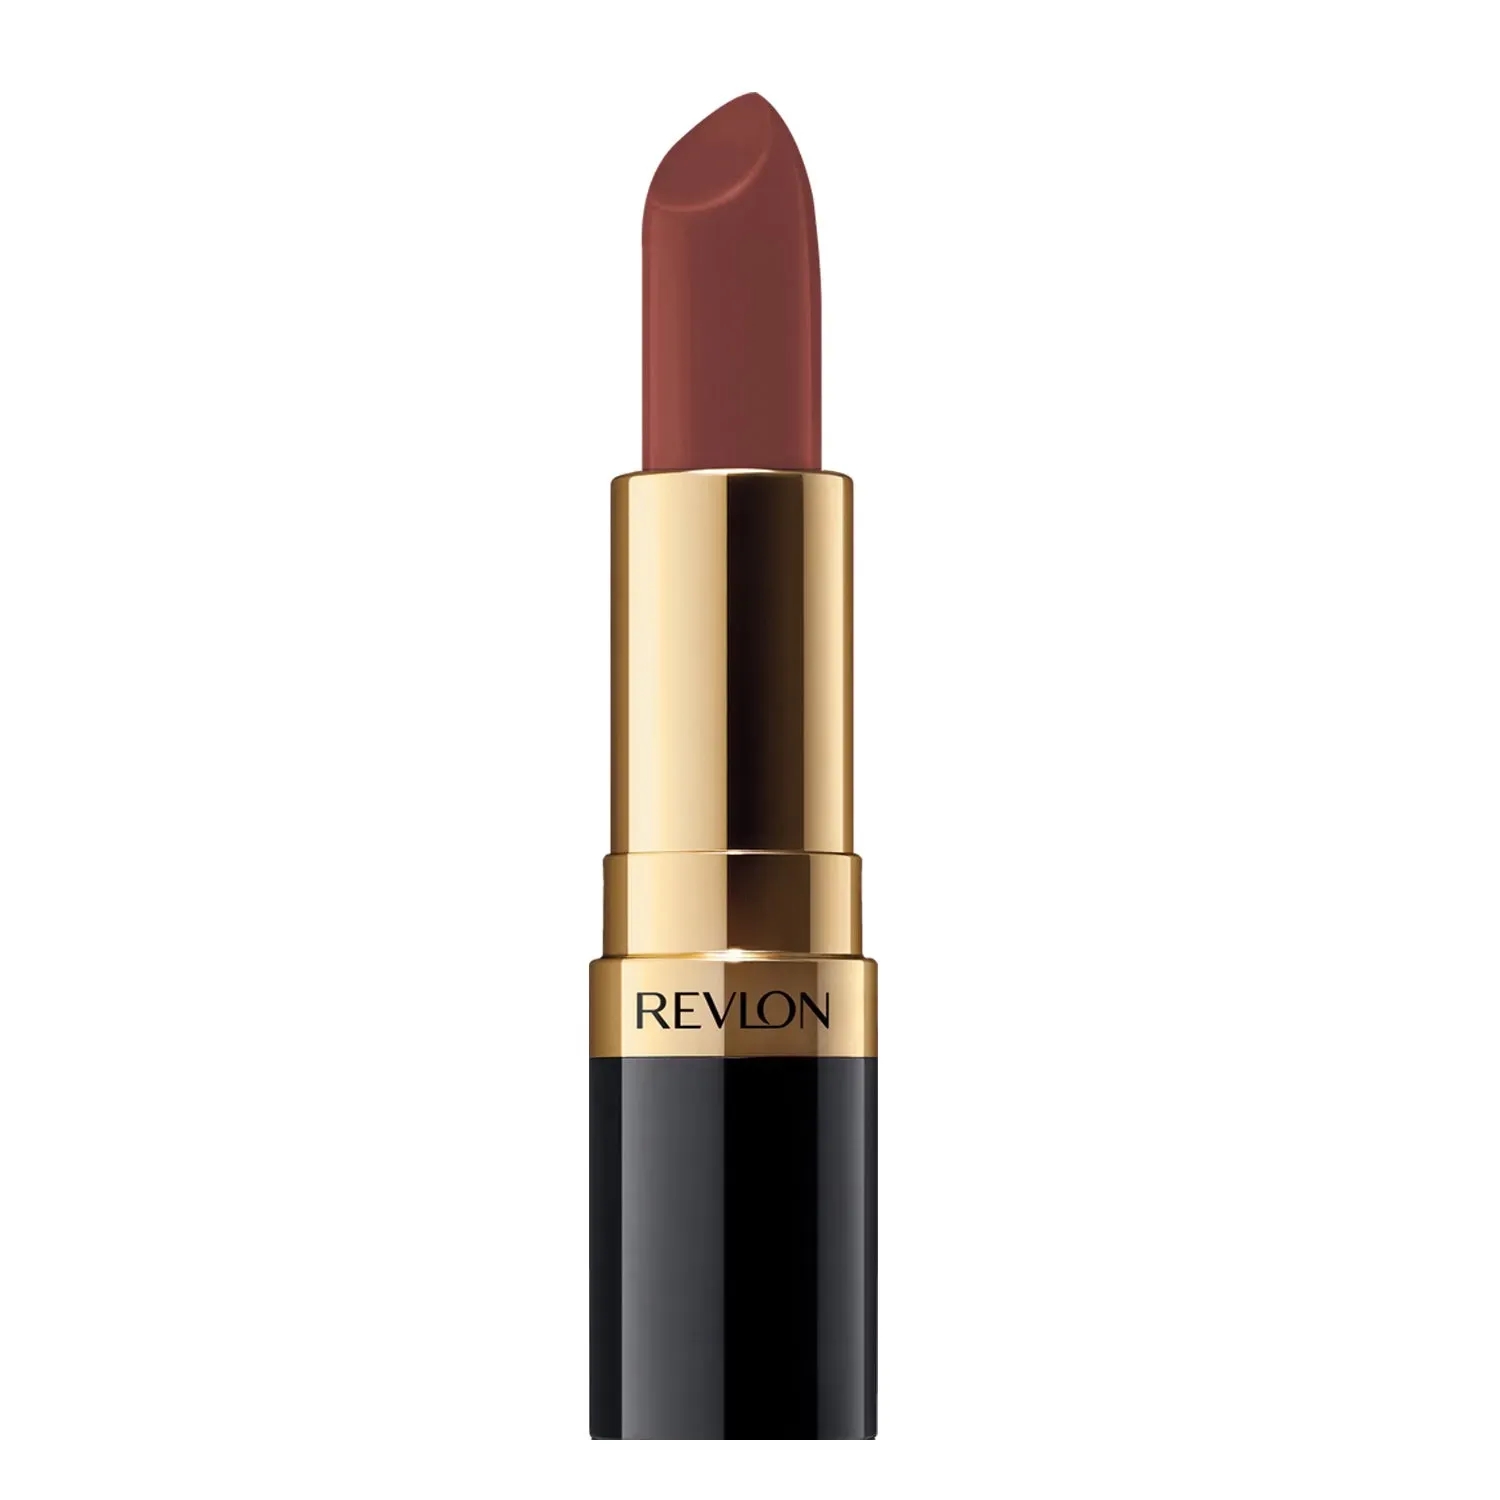 Revlon | Revlon Super Lustrous Lipstick - Chocolate Velvety (4.2g)